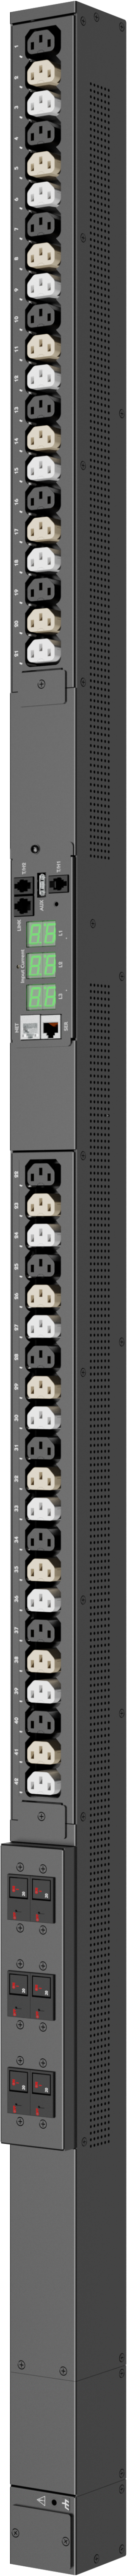 Servertech PRO2â„¢ HDOTÂ® 11.0kW - 22.0kW (36-42) outlets Rack PDU - C2W36CE-4PAF2M66